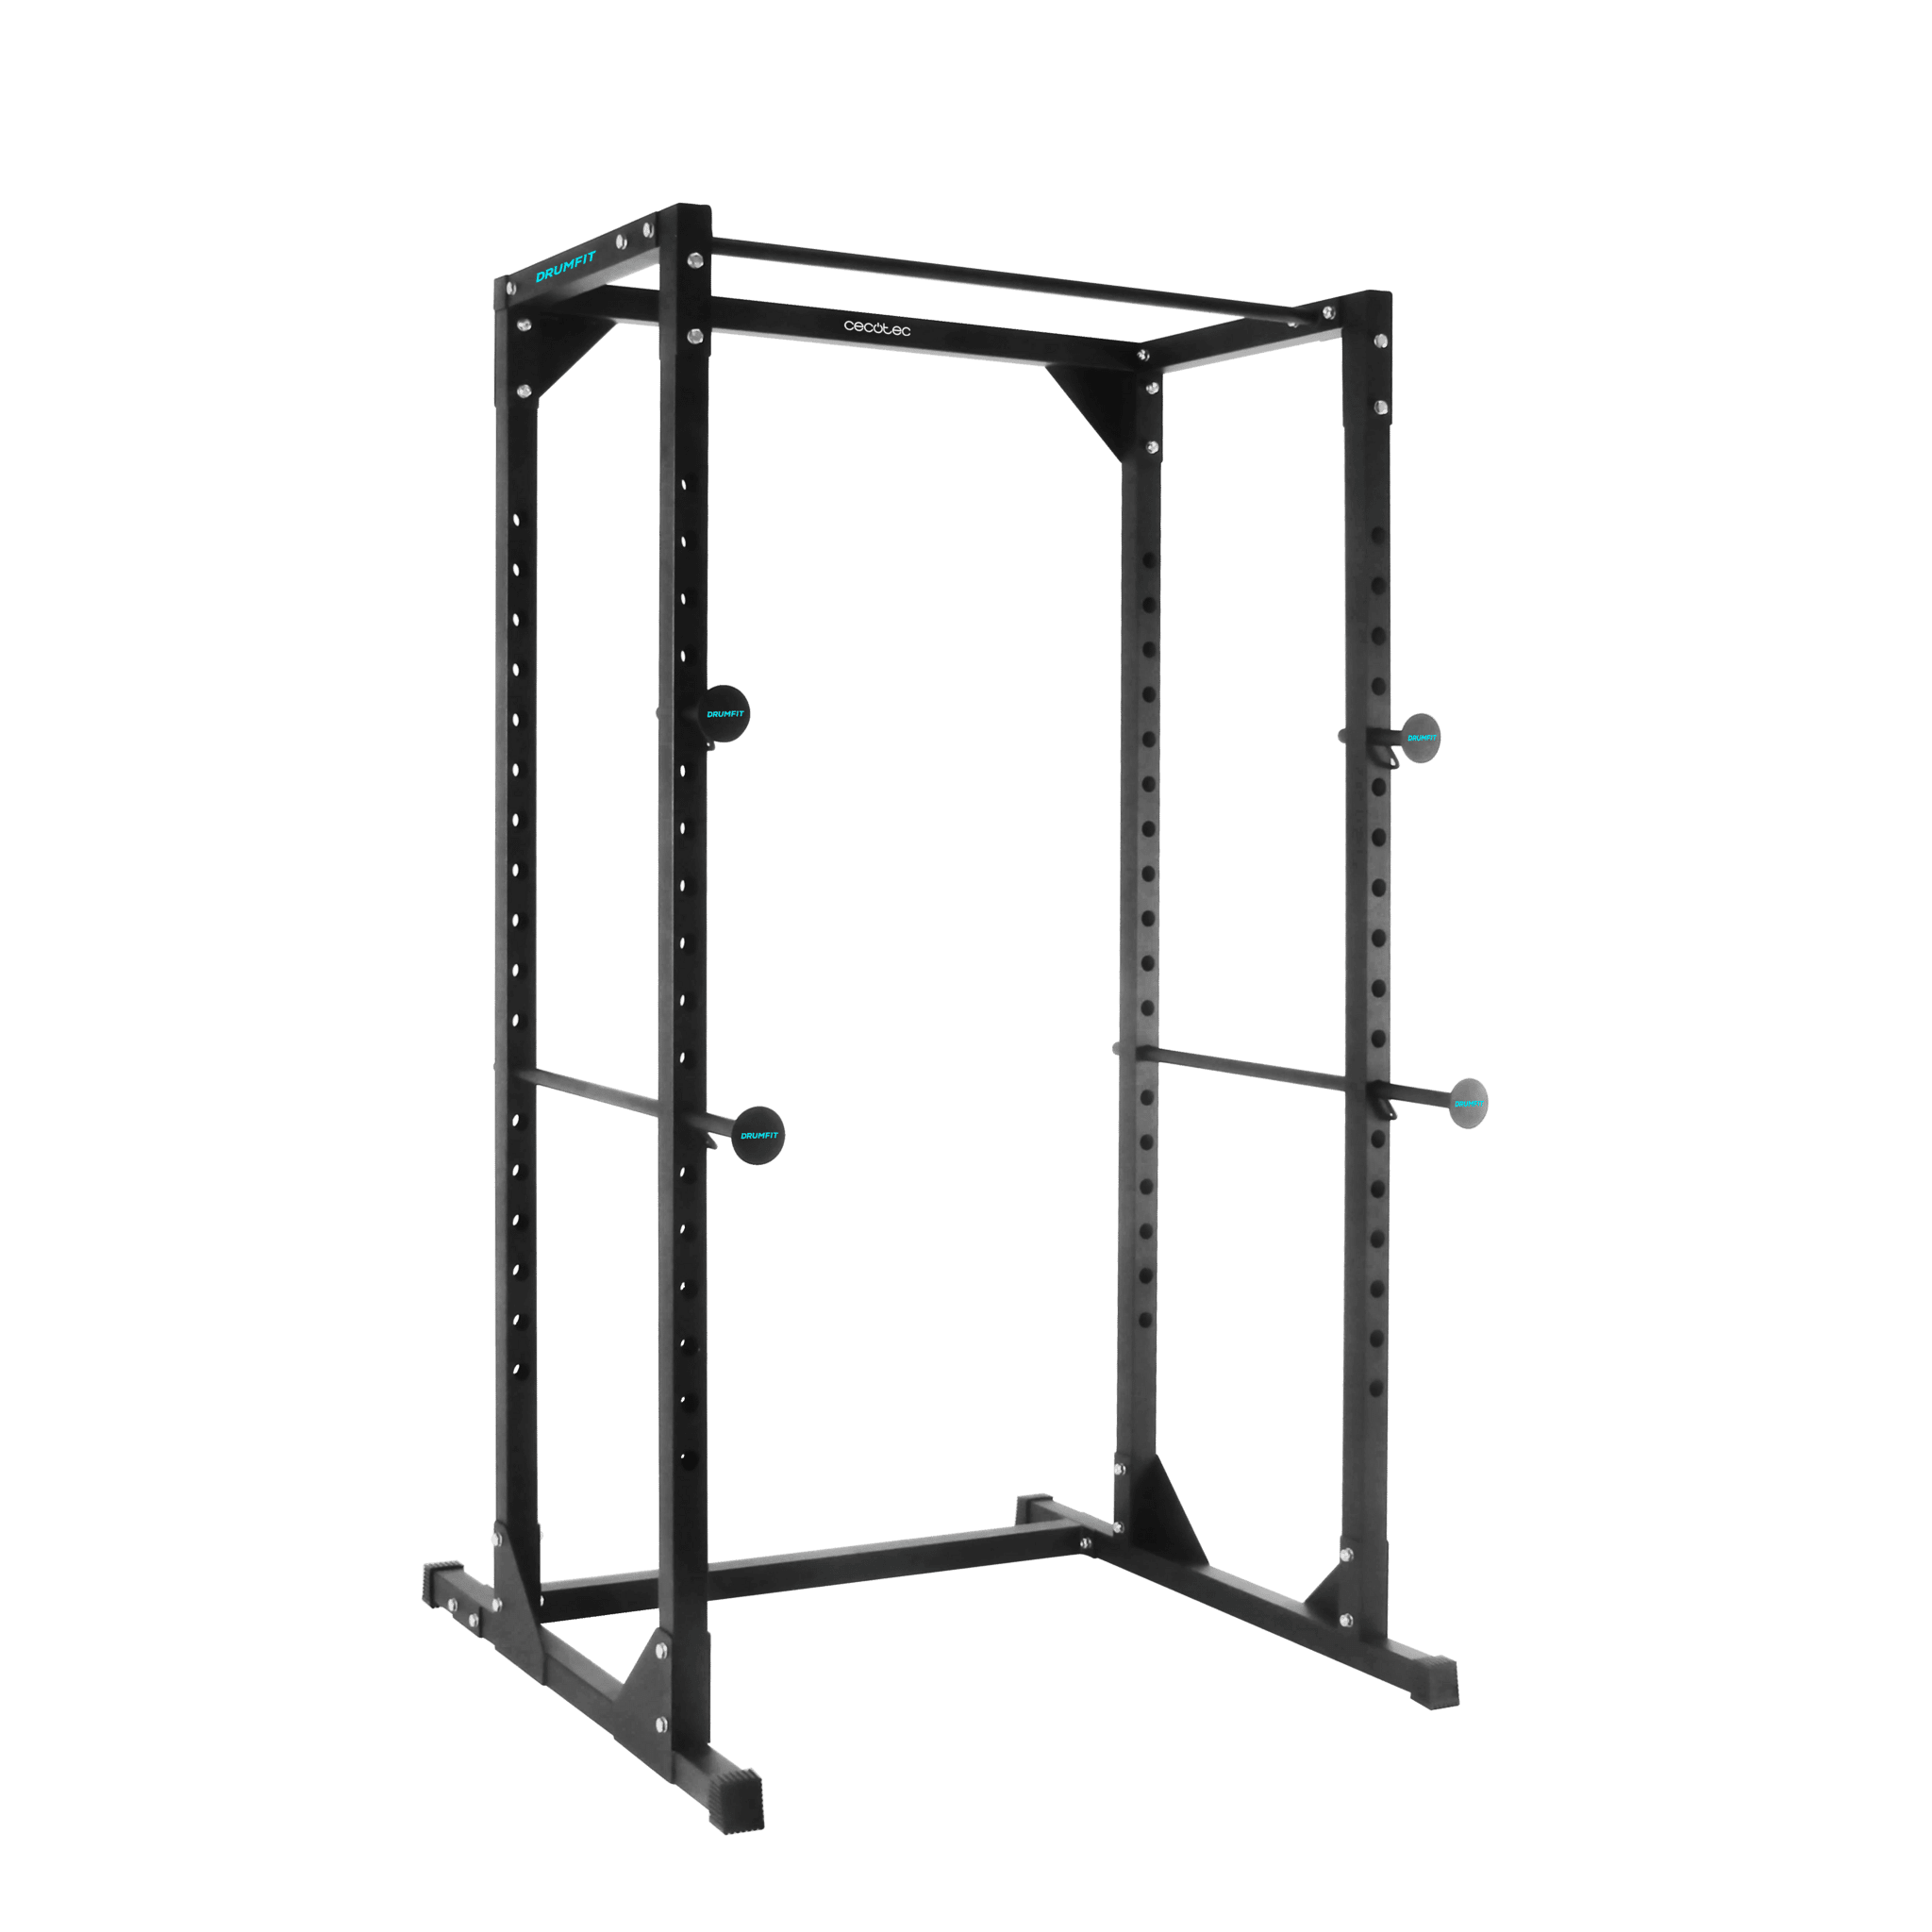 Drumfit PowerRack 1000 Power Rack. Chaise romaine pour s'entraîner en toute sécurité avec des poids et des barres de traction.